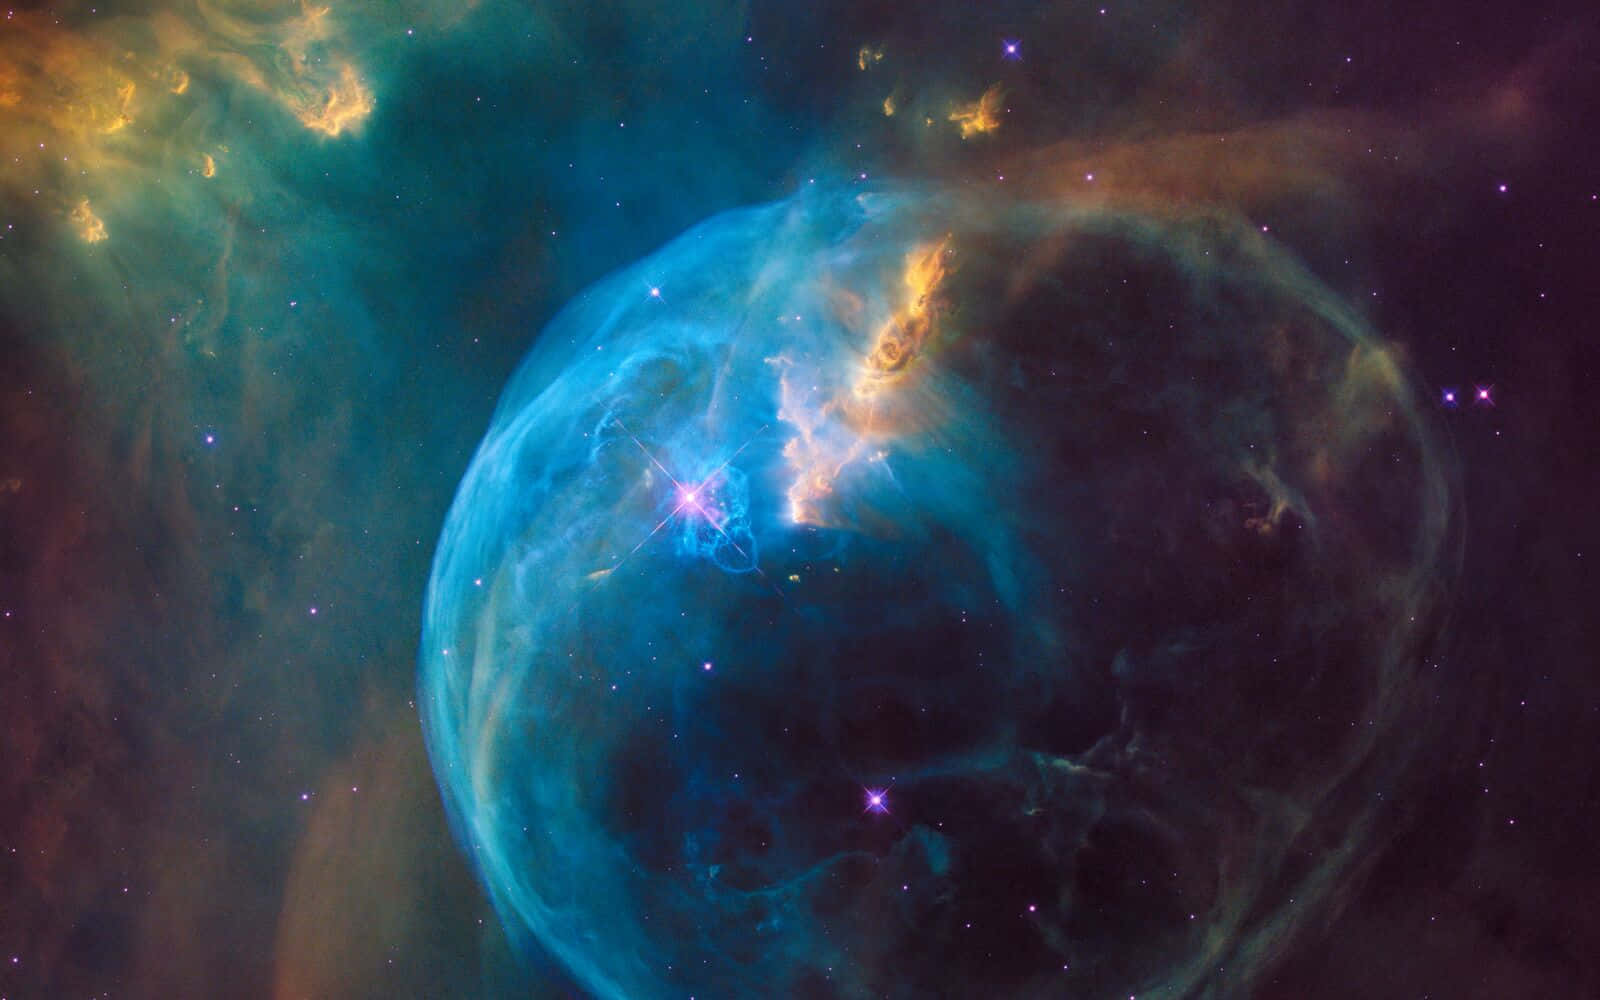 Super Nova Astronomy Picture